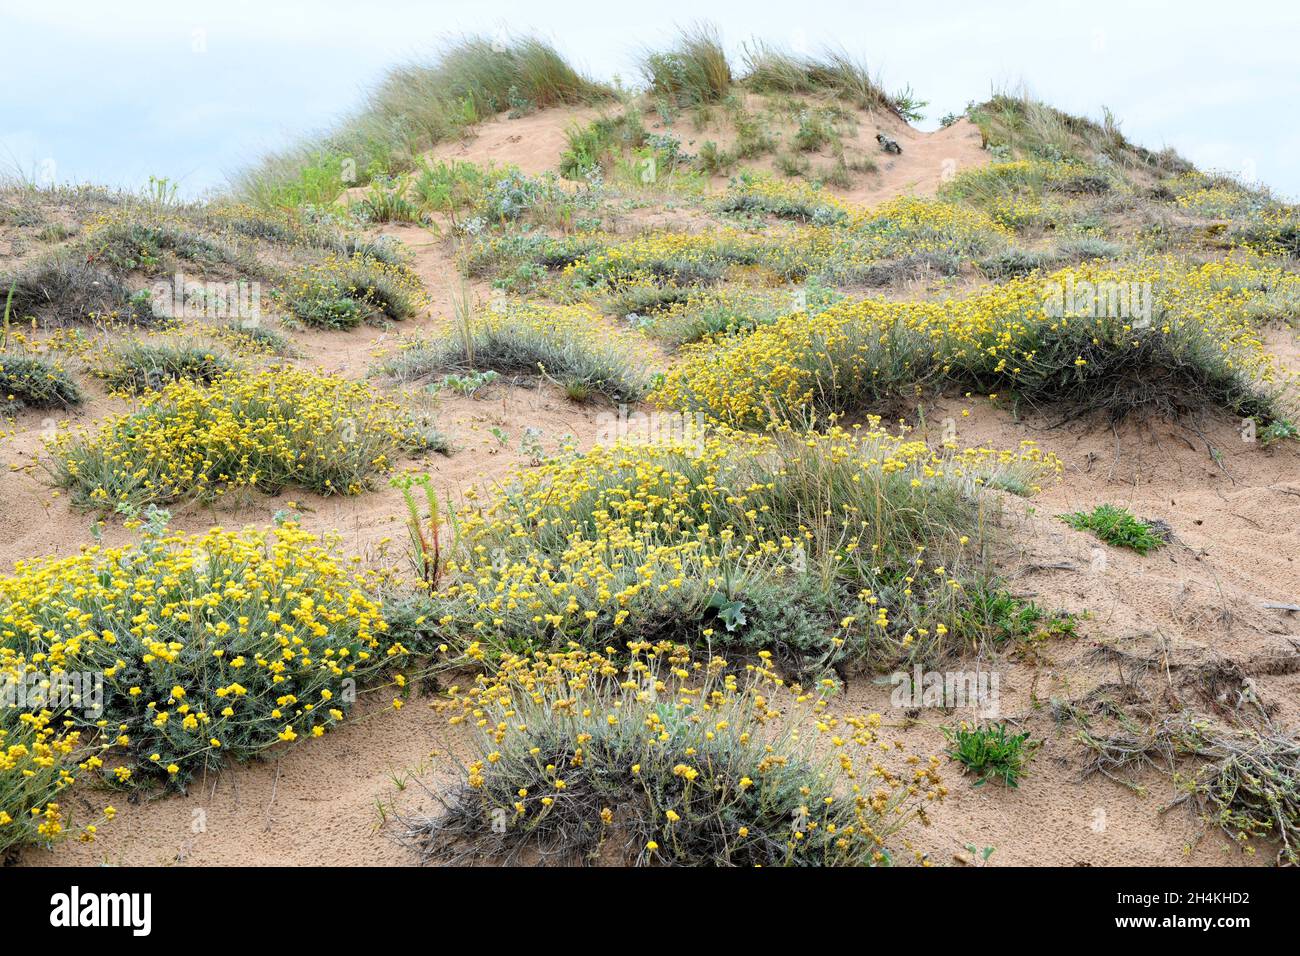 Die mediterrane Strohblume (Helichrysum stoechas) ist eine einjährige oder mehrjährige Pflanze, die an den sandigen Küsten des Mittelmeerbeckens beheimatet ist. Dieses Foto wurde aufgenommen Stockfoto